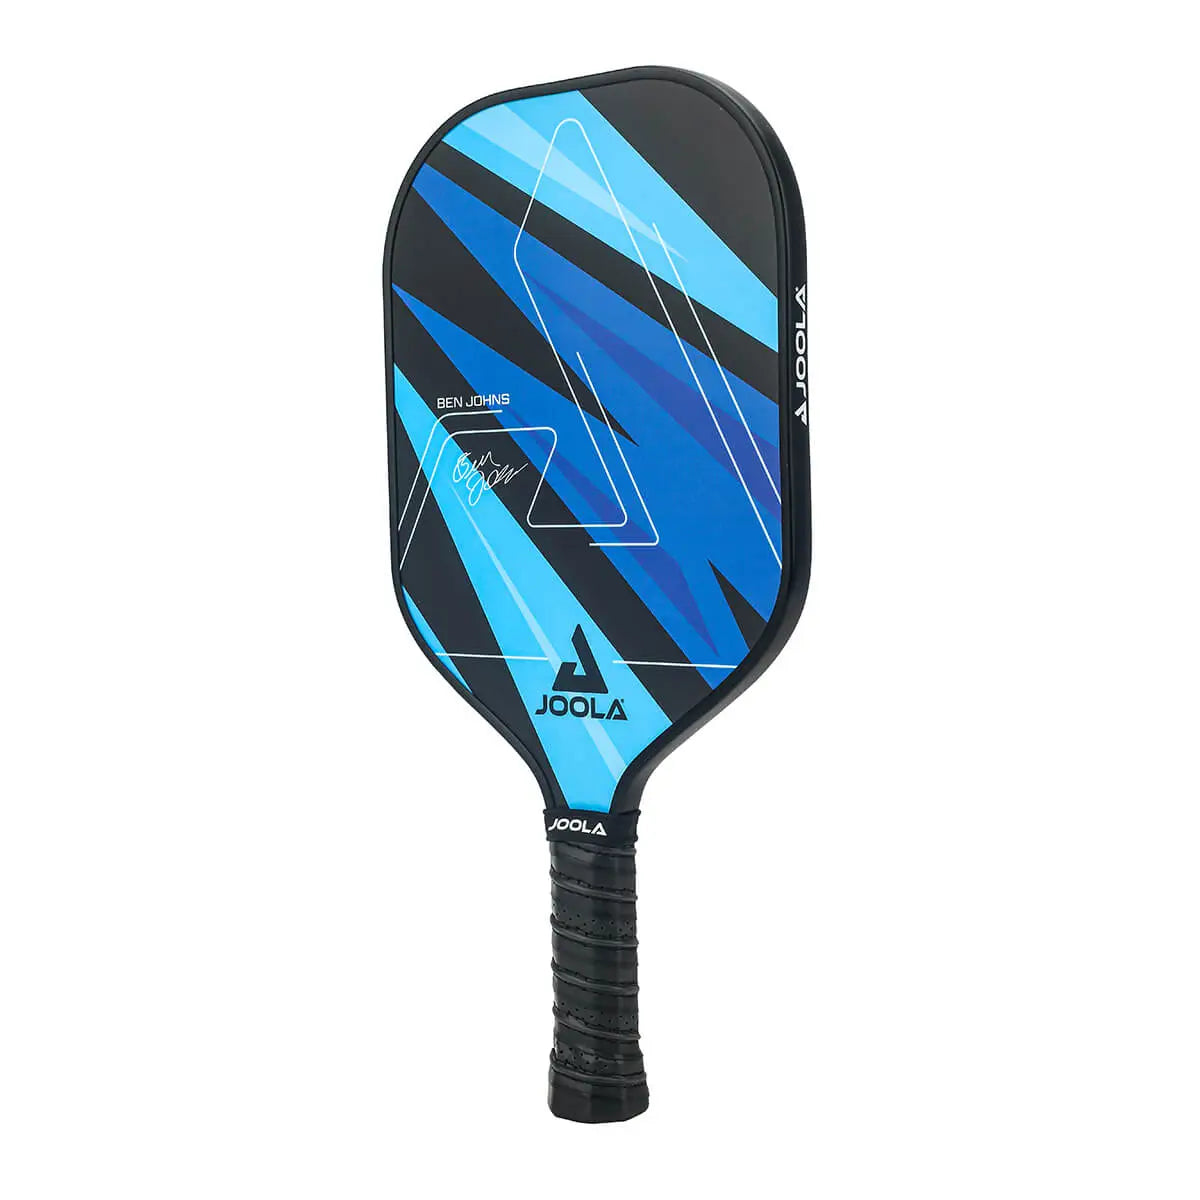 JOOLA 80501 Table Tennis Racket Bag Black/Blue